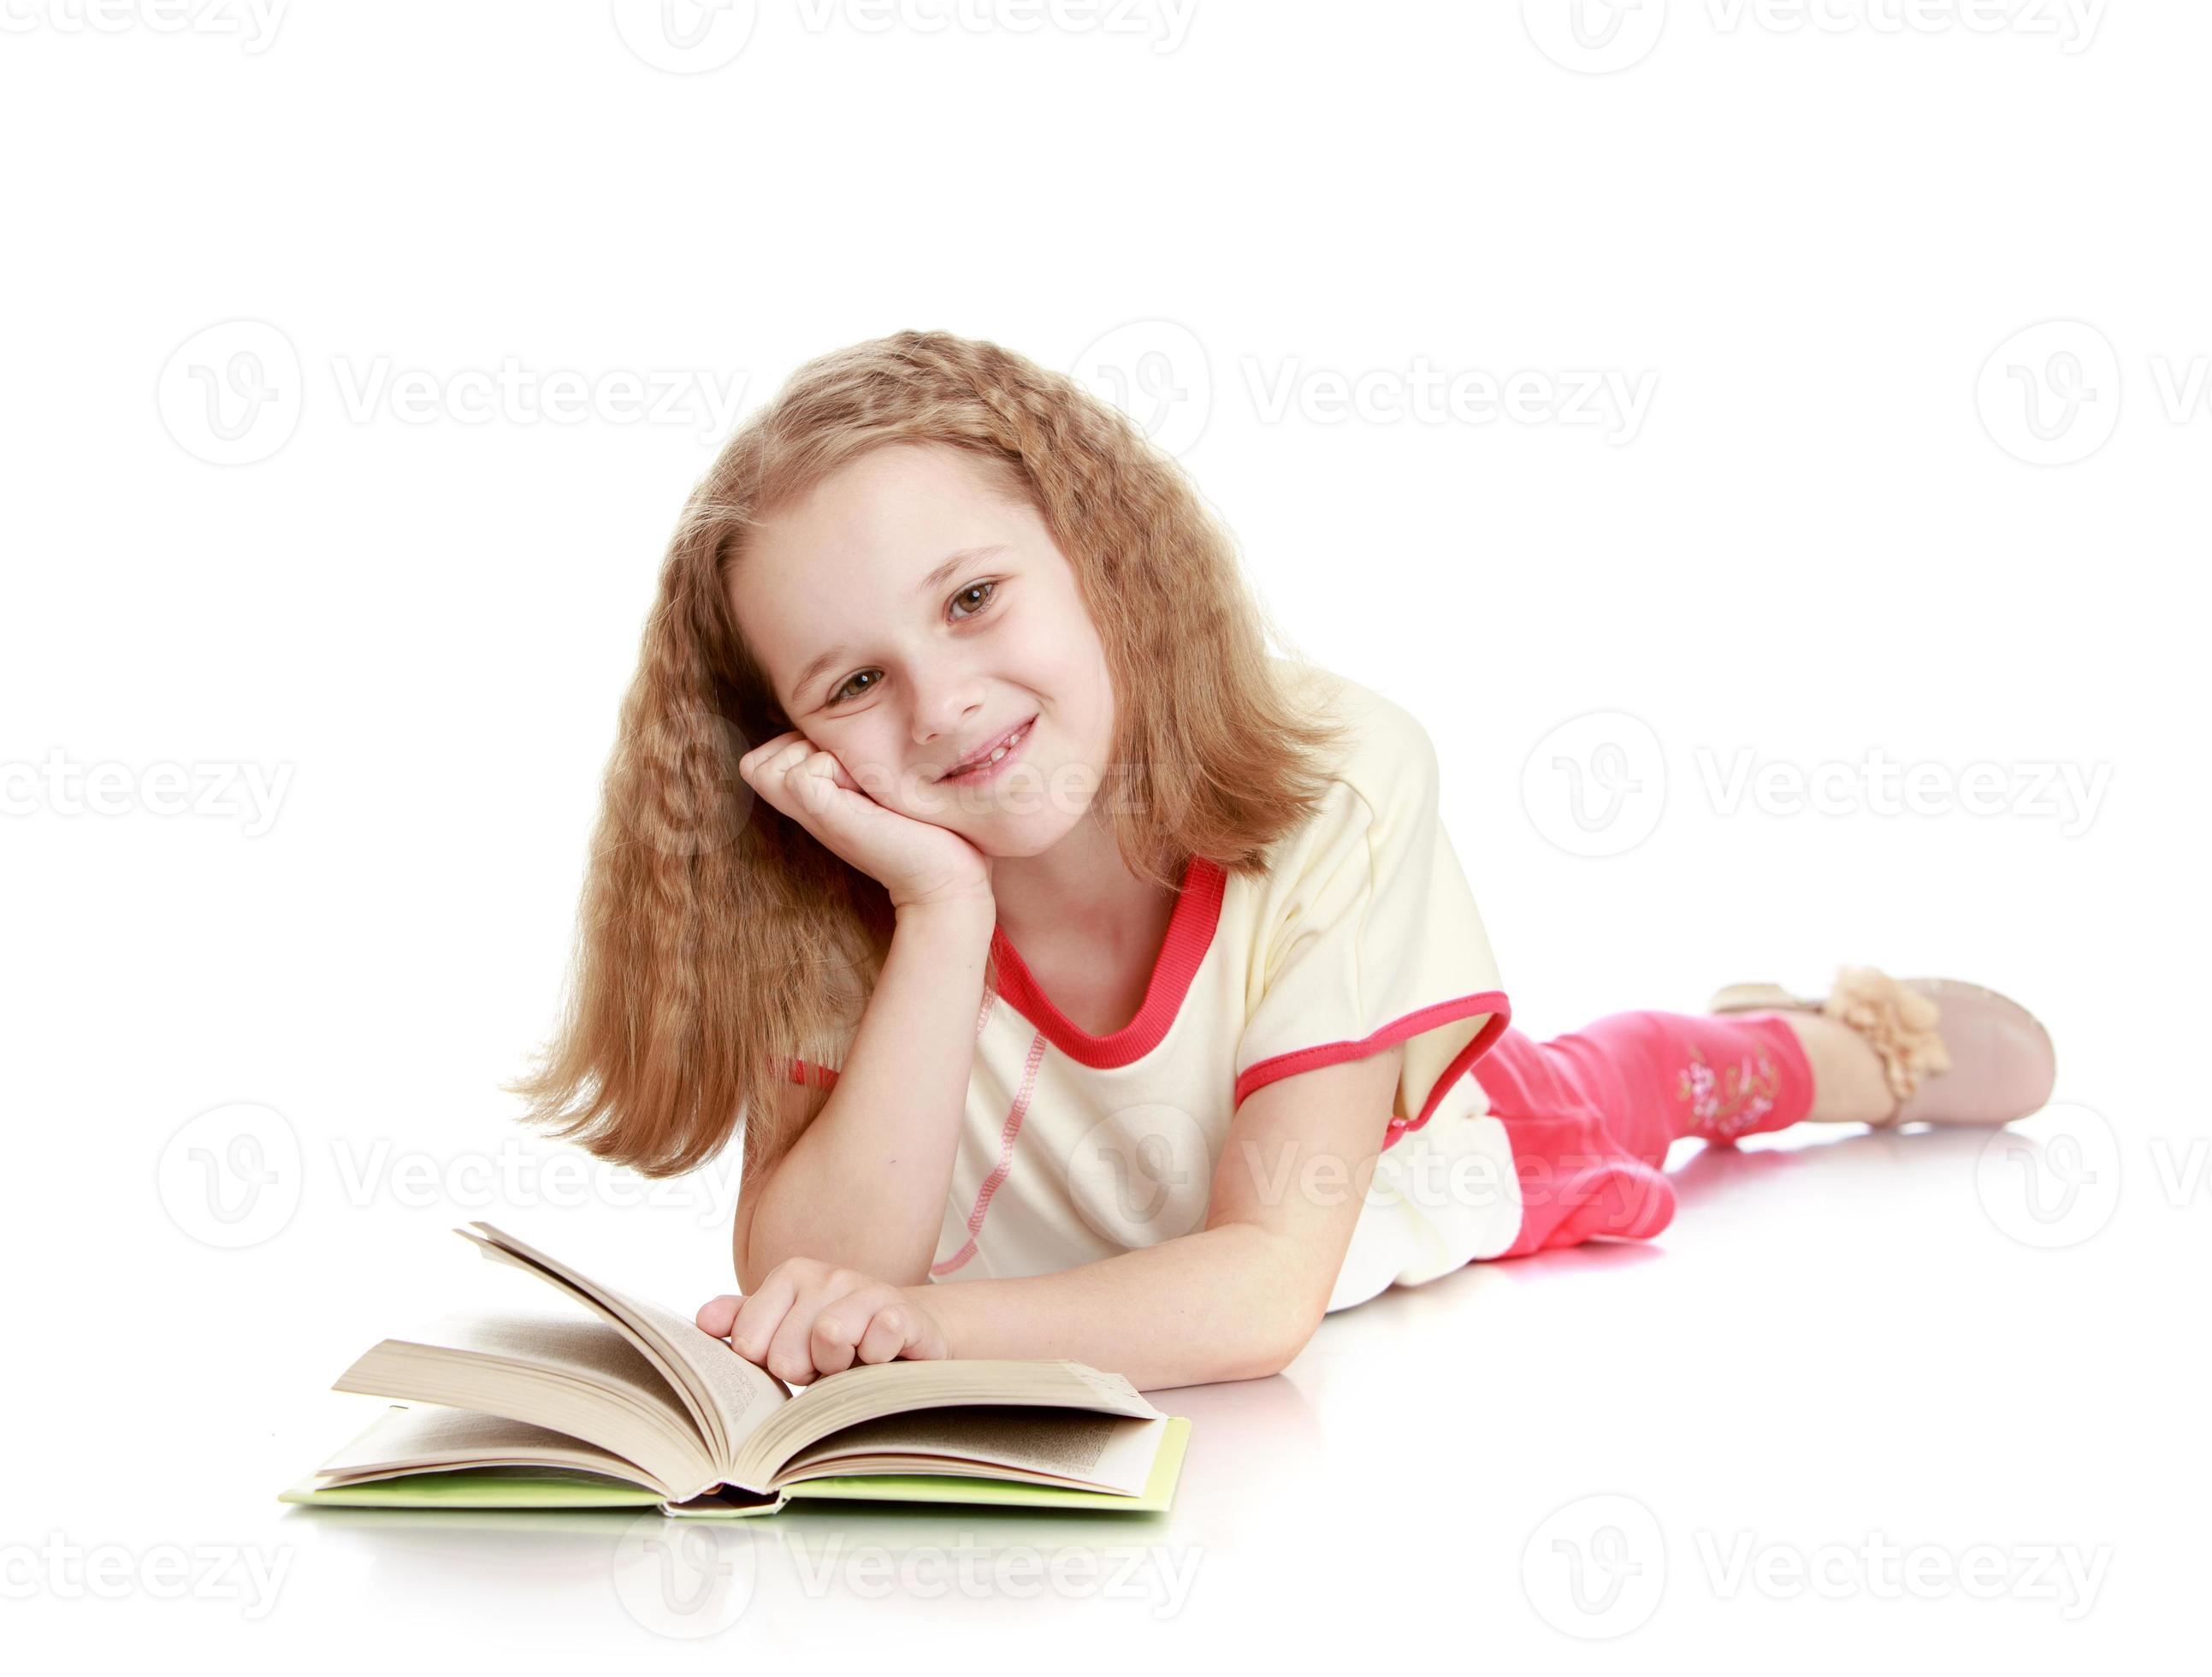 het meisje ligt op de grond en leest een boek foto